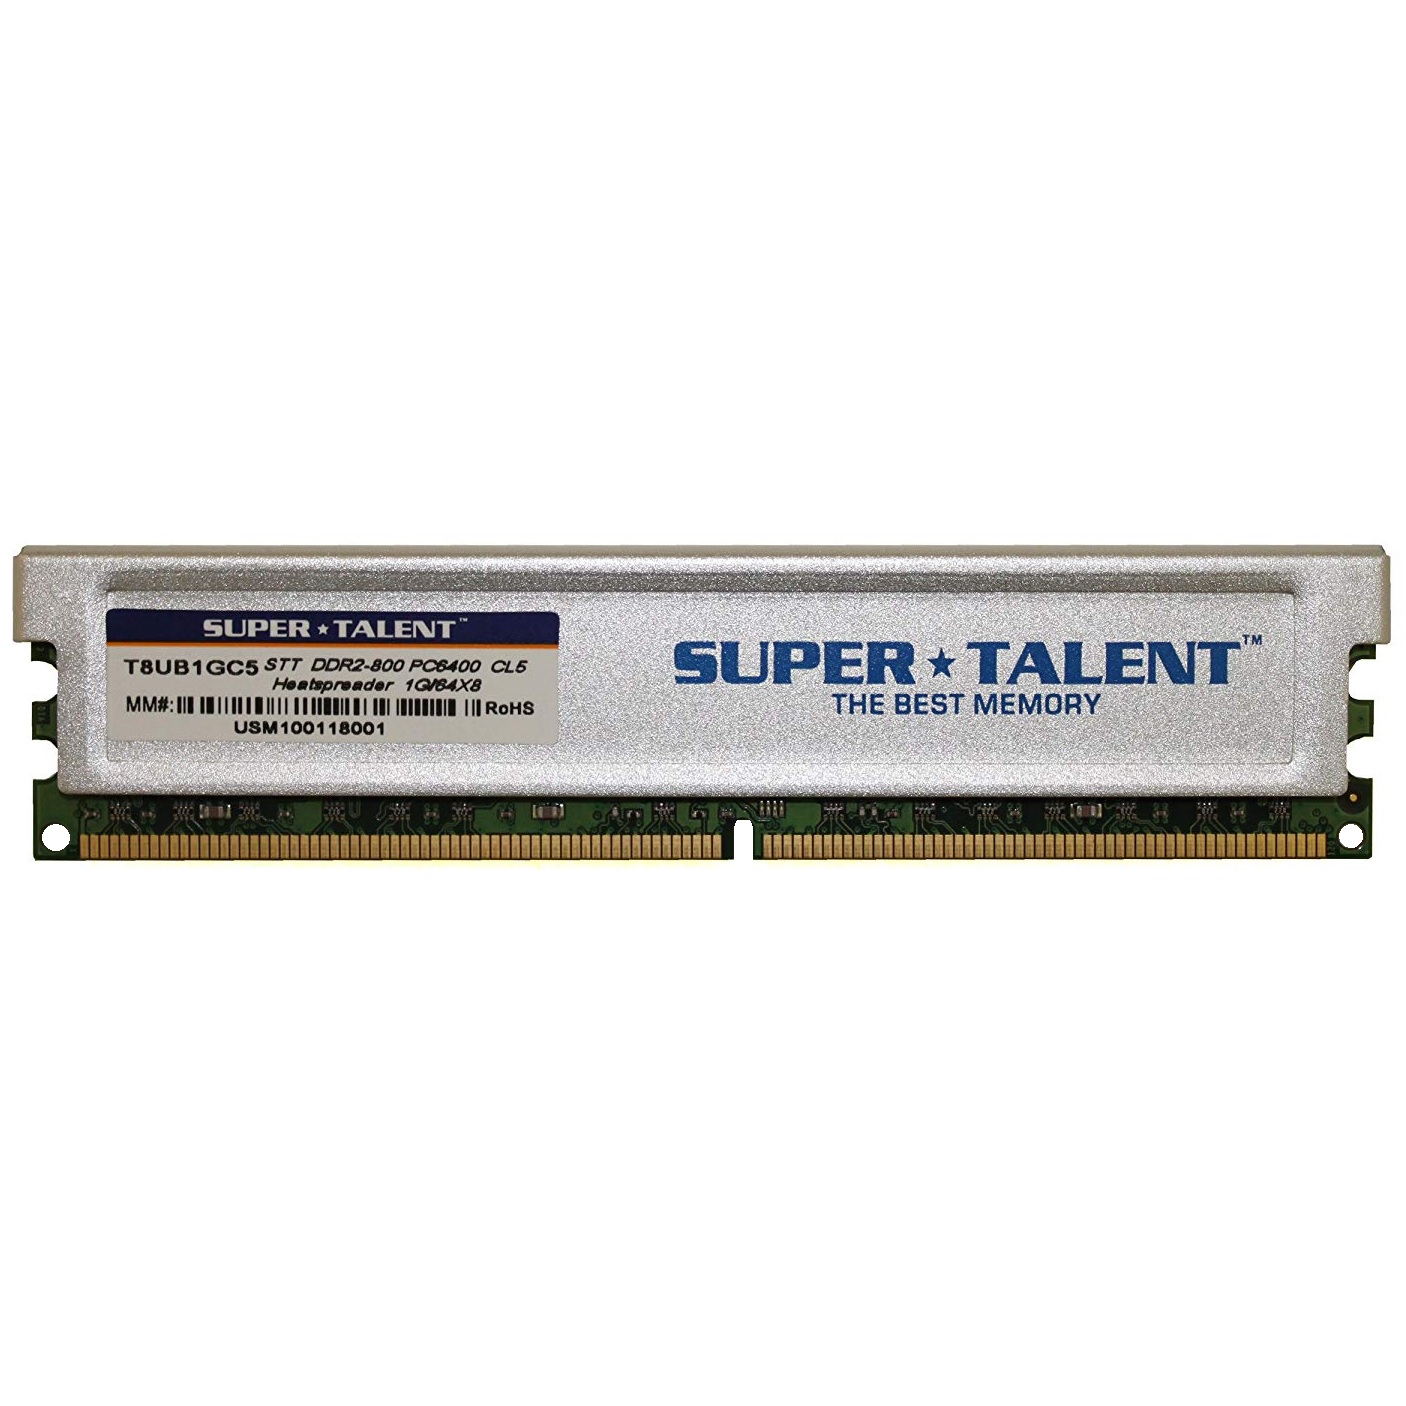 رم دسکتاپ DDR2 تک کاناله 800 مگاهرتز CL6 سوپر تلنت مدل T8UB1GC5 ظرفیت 1 گیگابایت